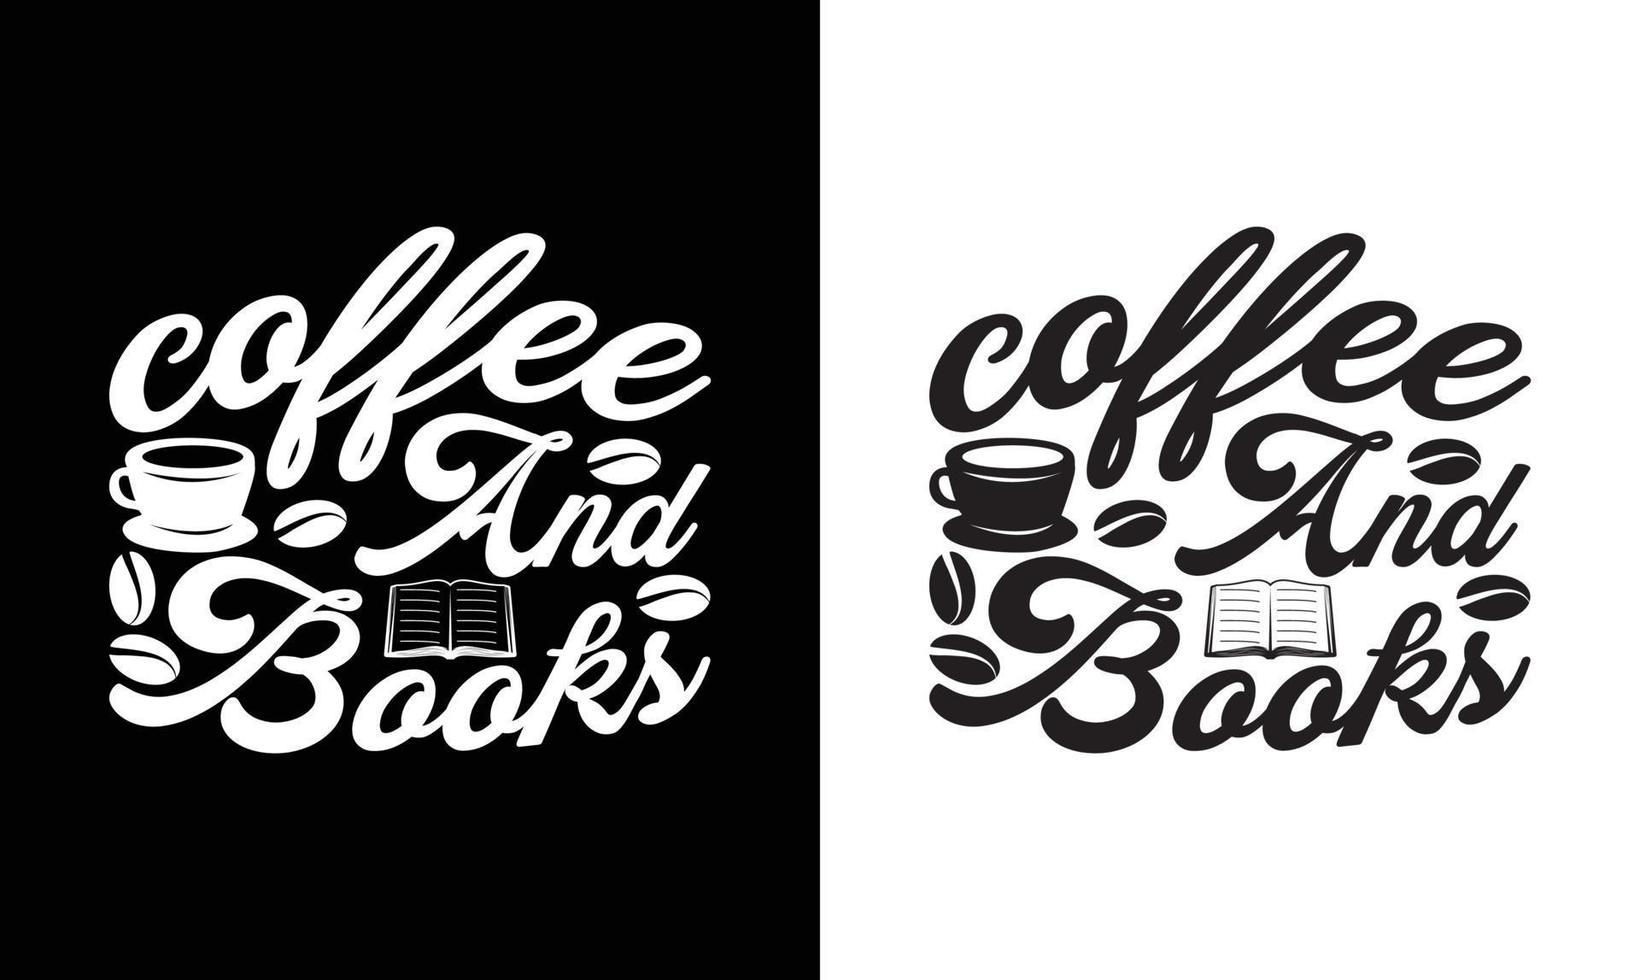 conception de t-shirt de citation de café, typographie vecteur